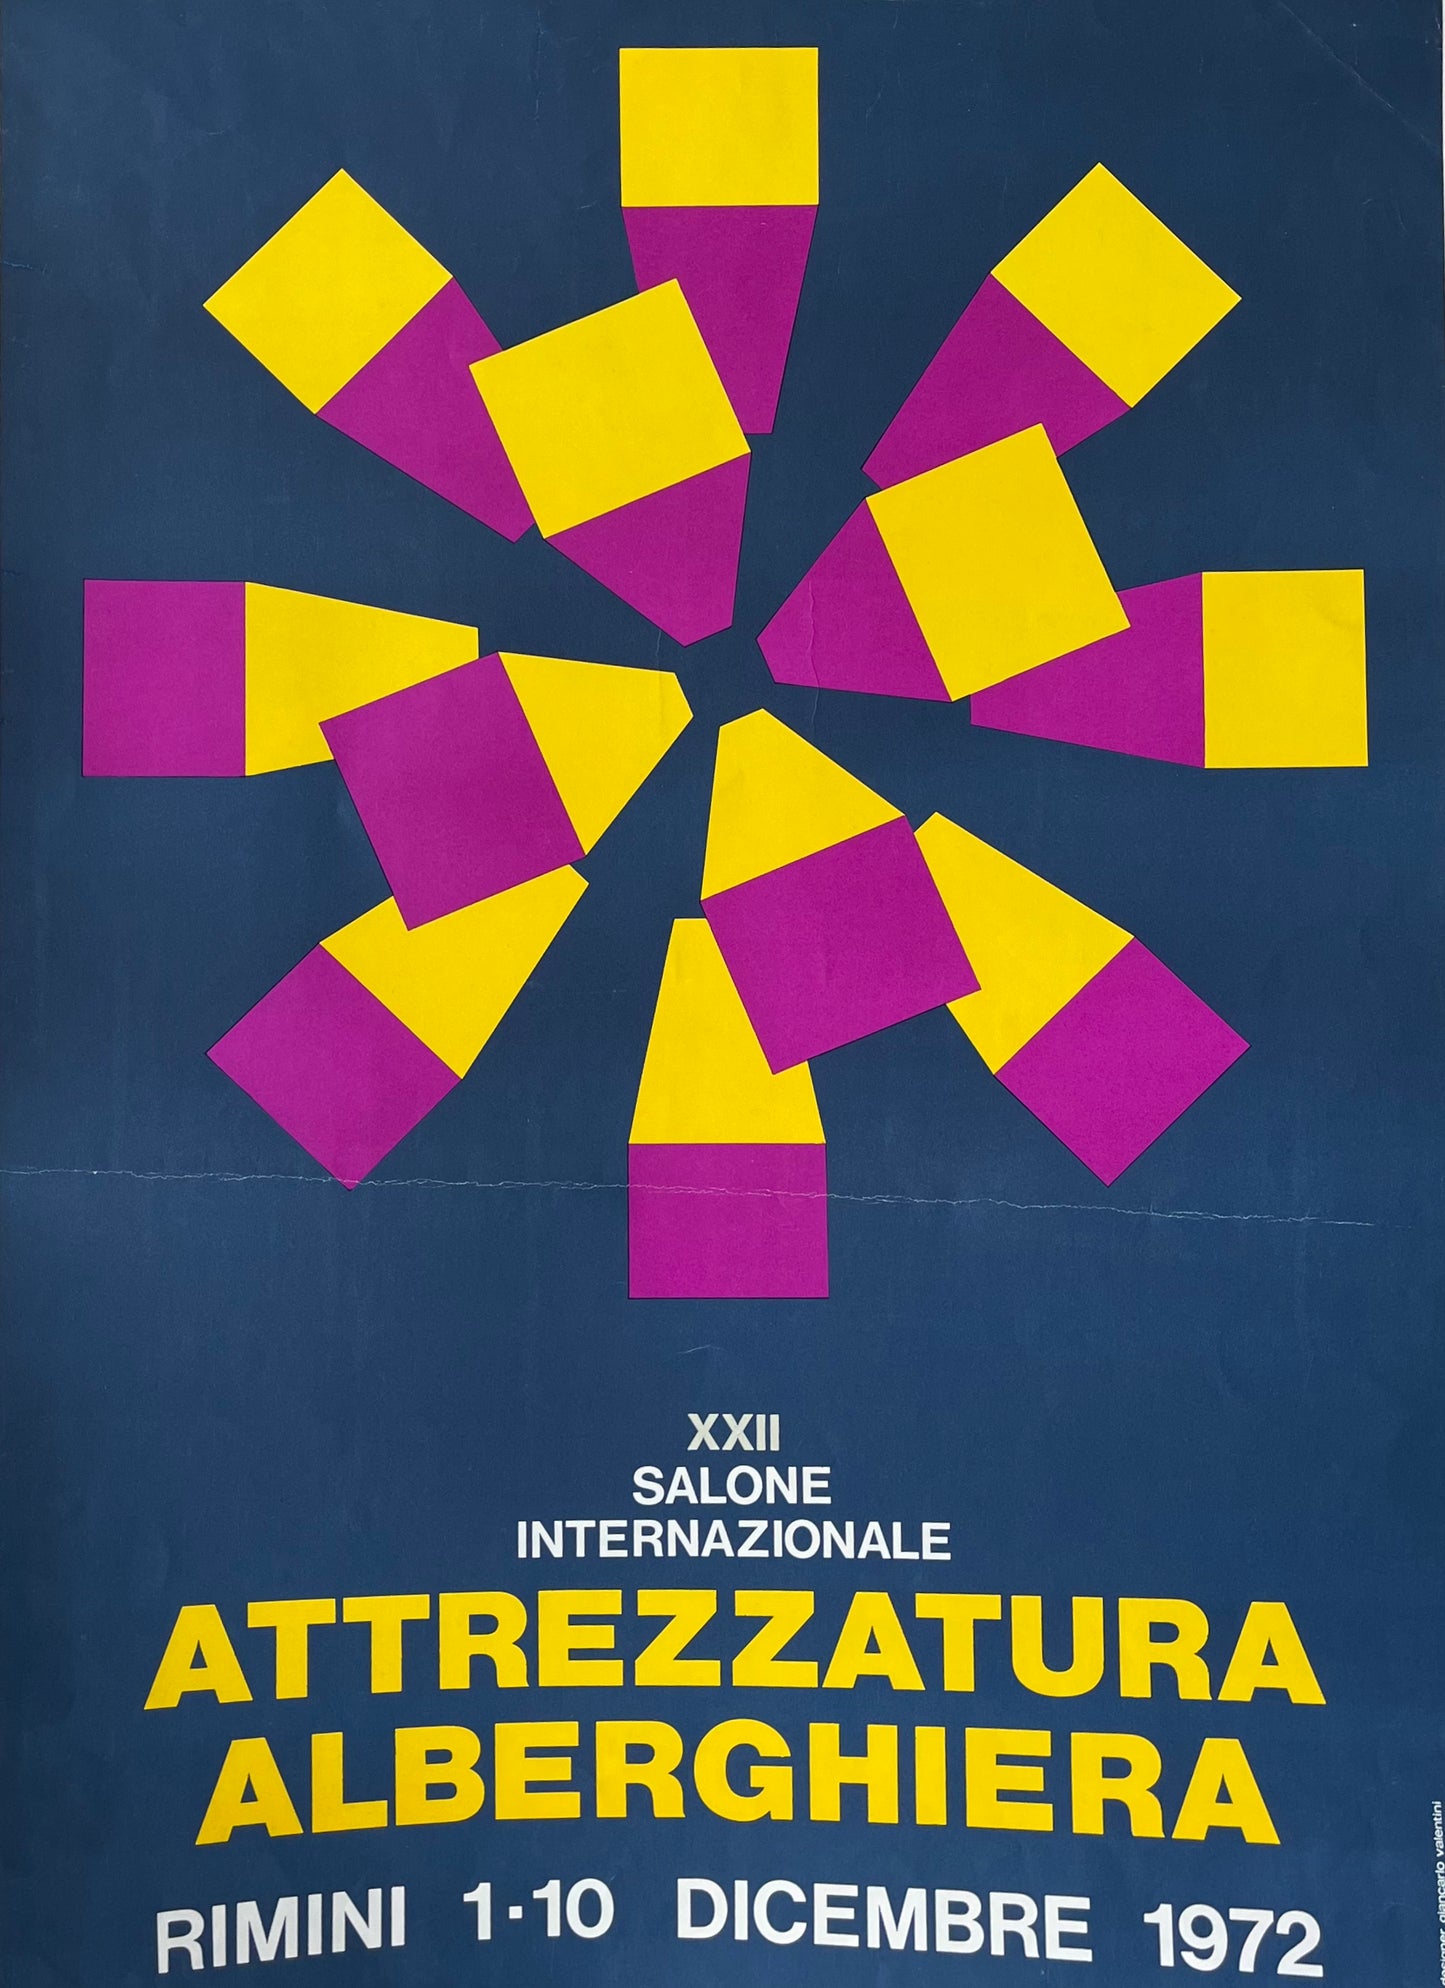 Attrezzatura Alberghiera by Parma